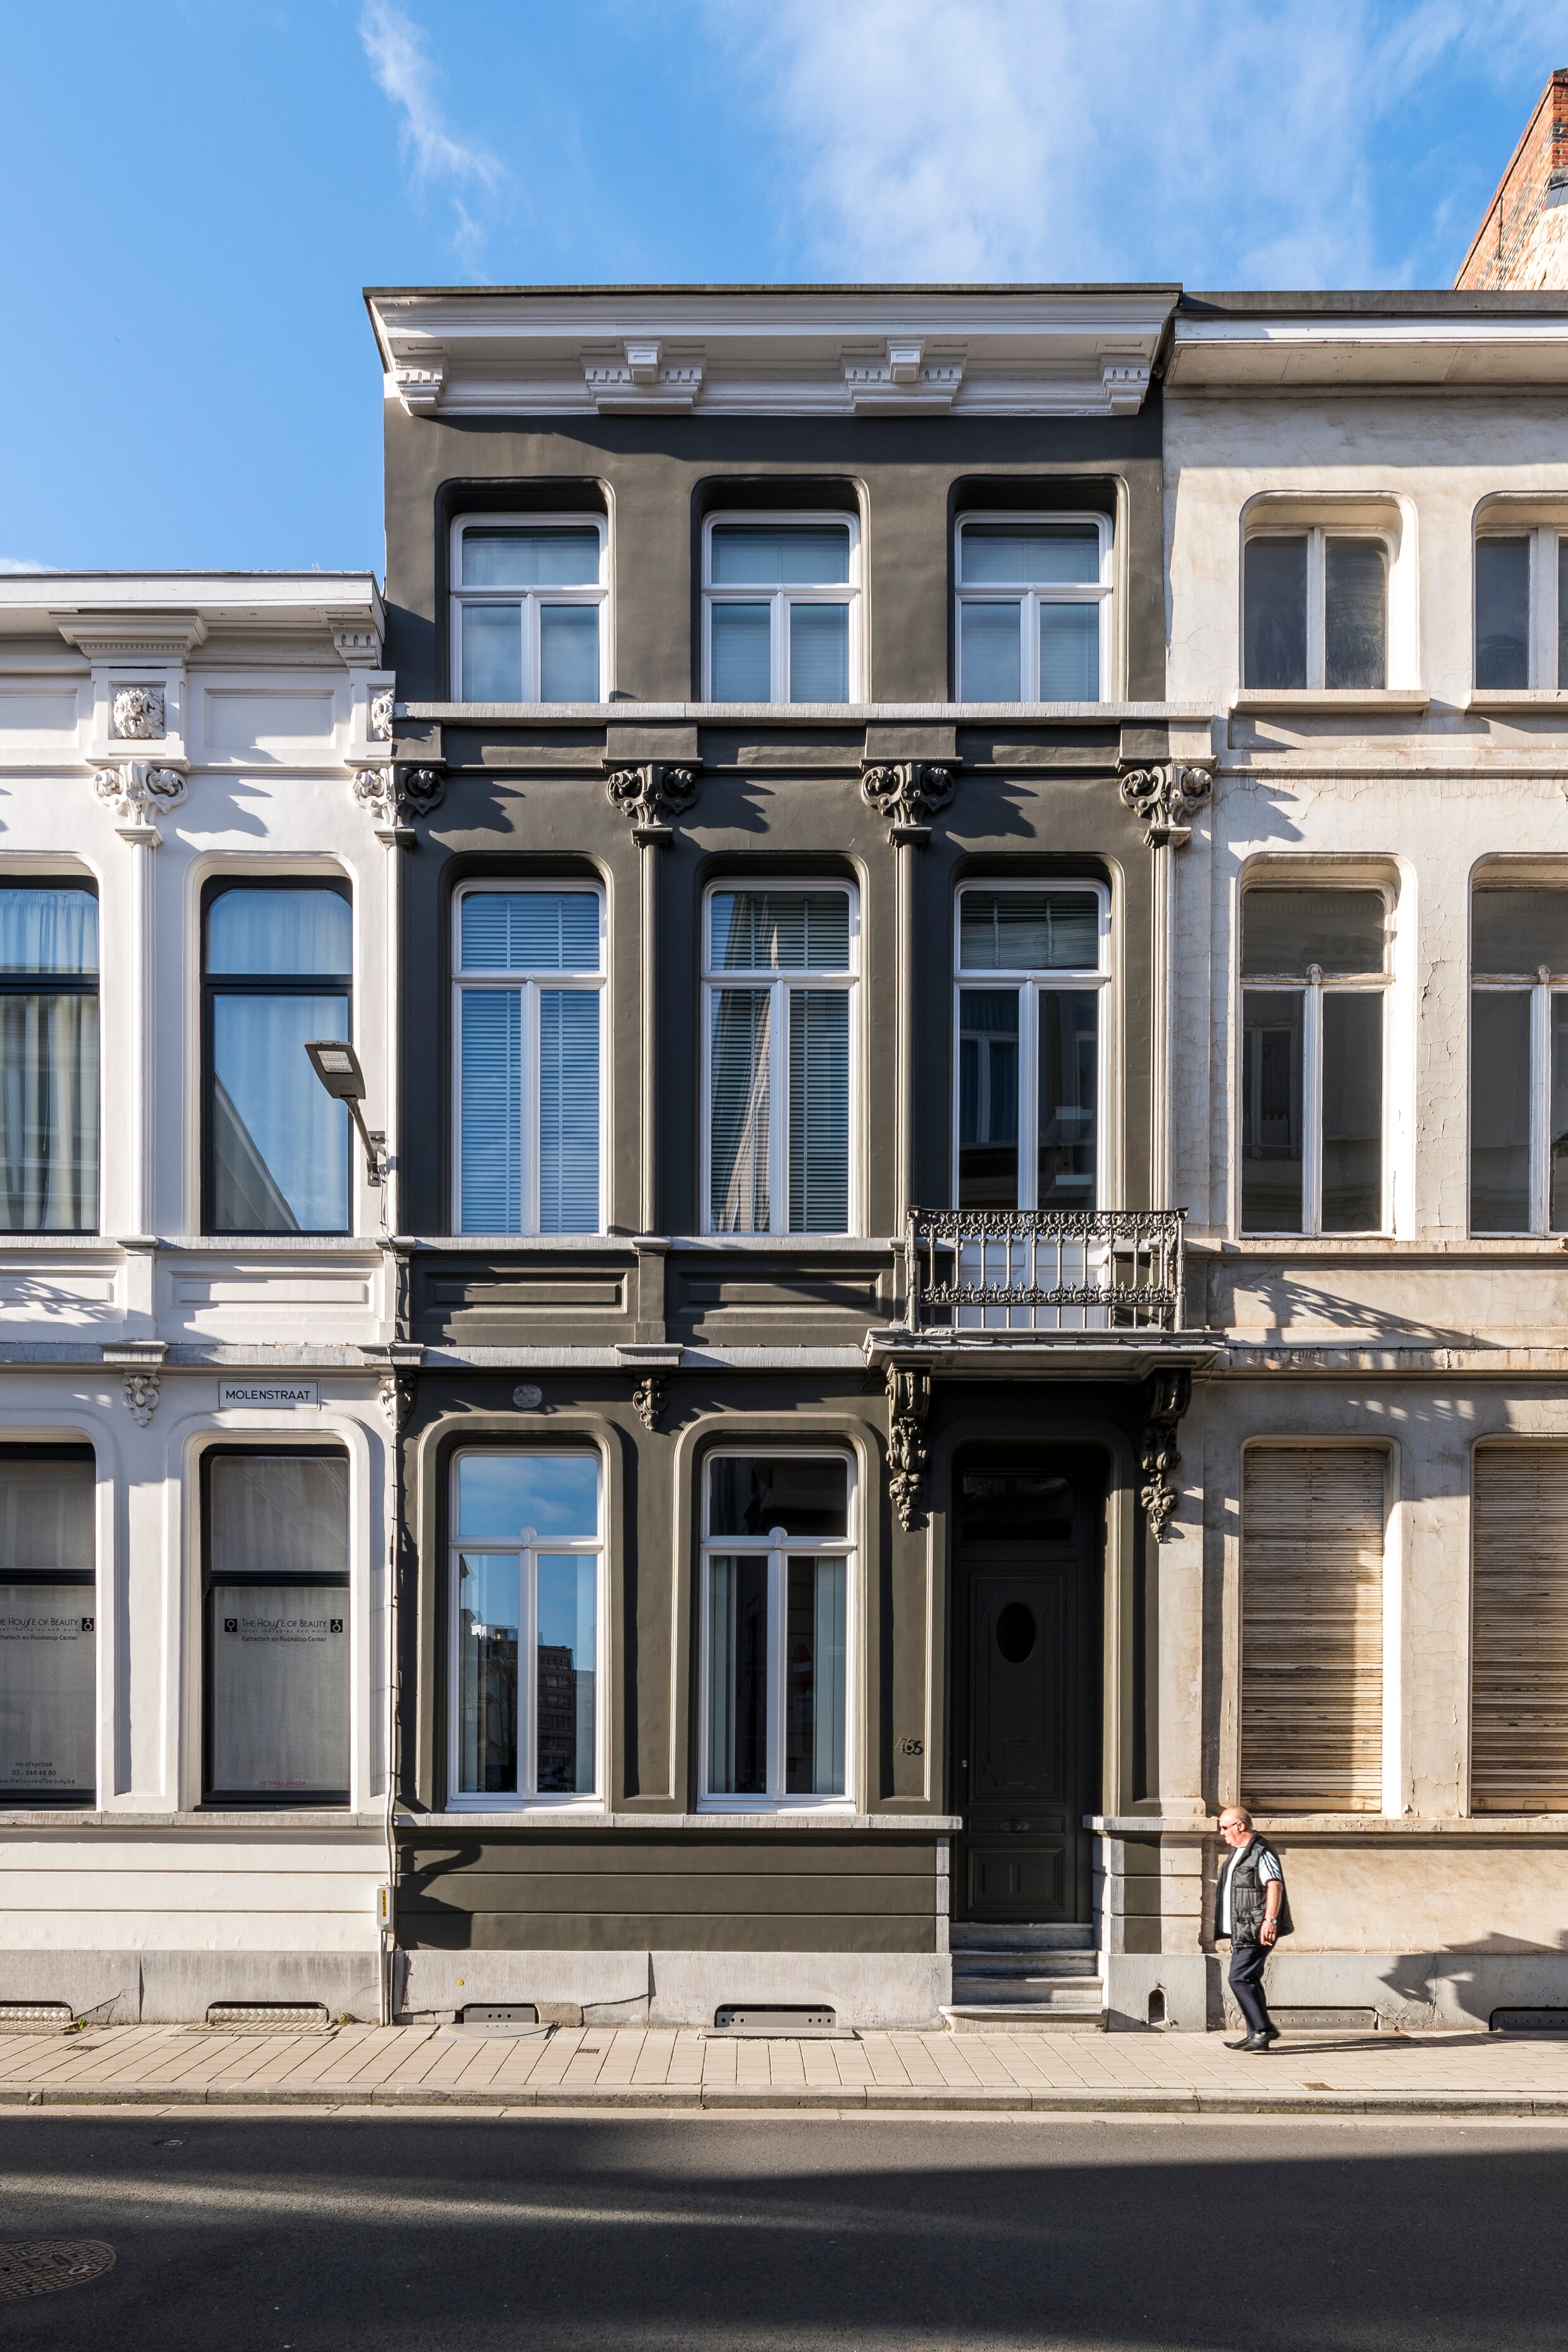 Binnenkijken in een rijk gevuld Antwerps herenhuis